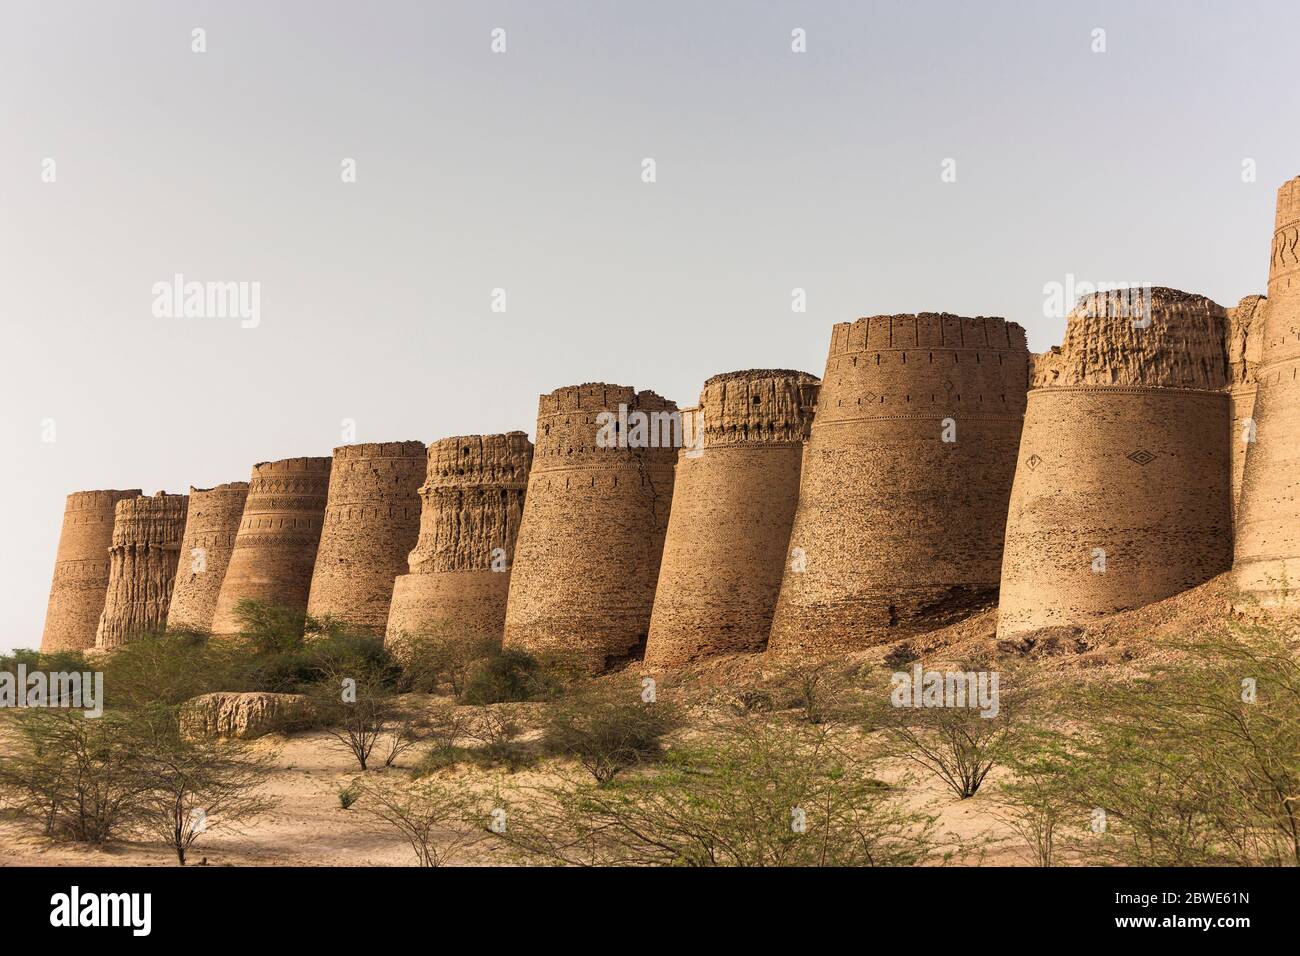 Derawar Fort, Derawar, Bahawalpur district, Punjab Province, Pakistan, South Asia, Asia Stock Photo